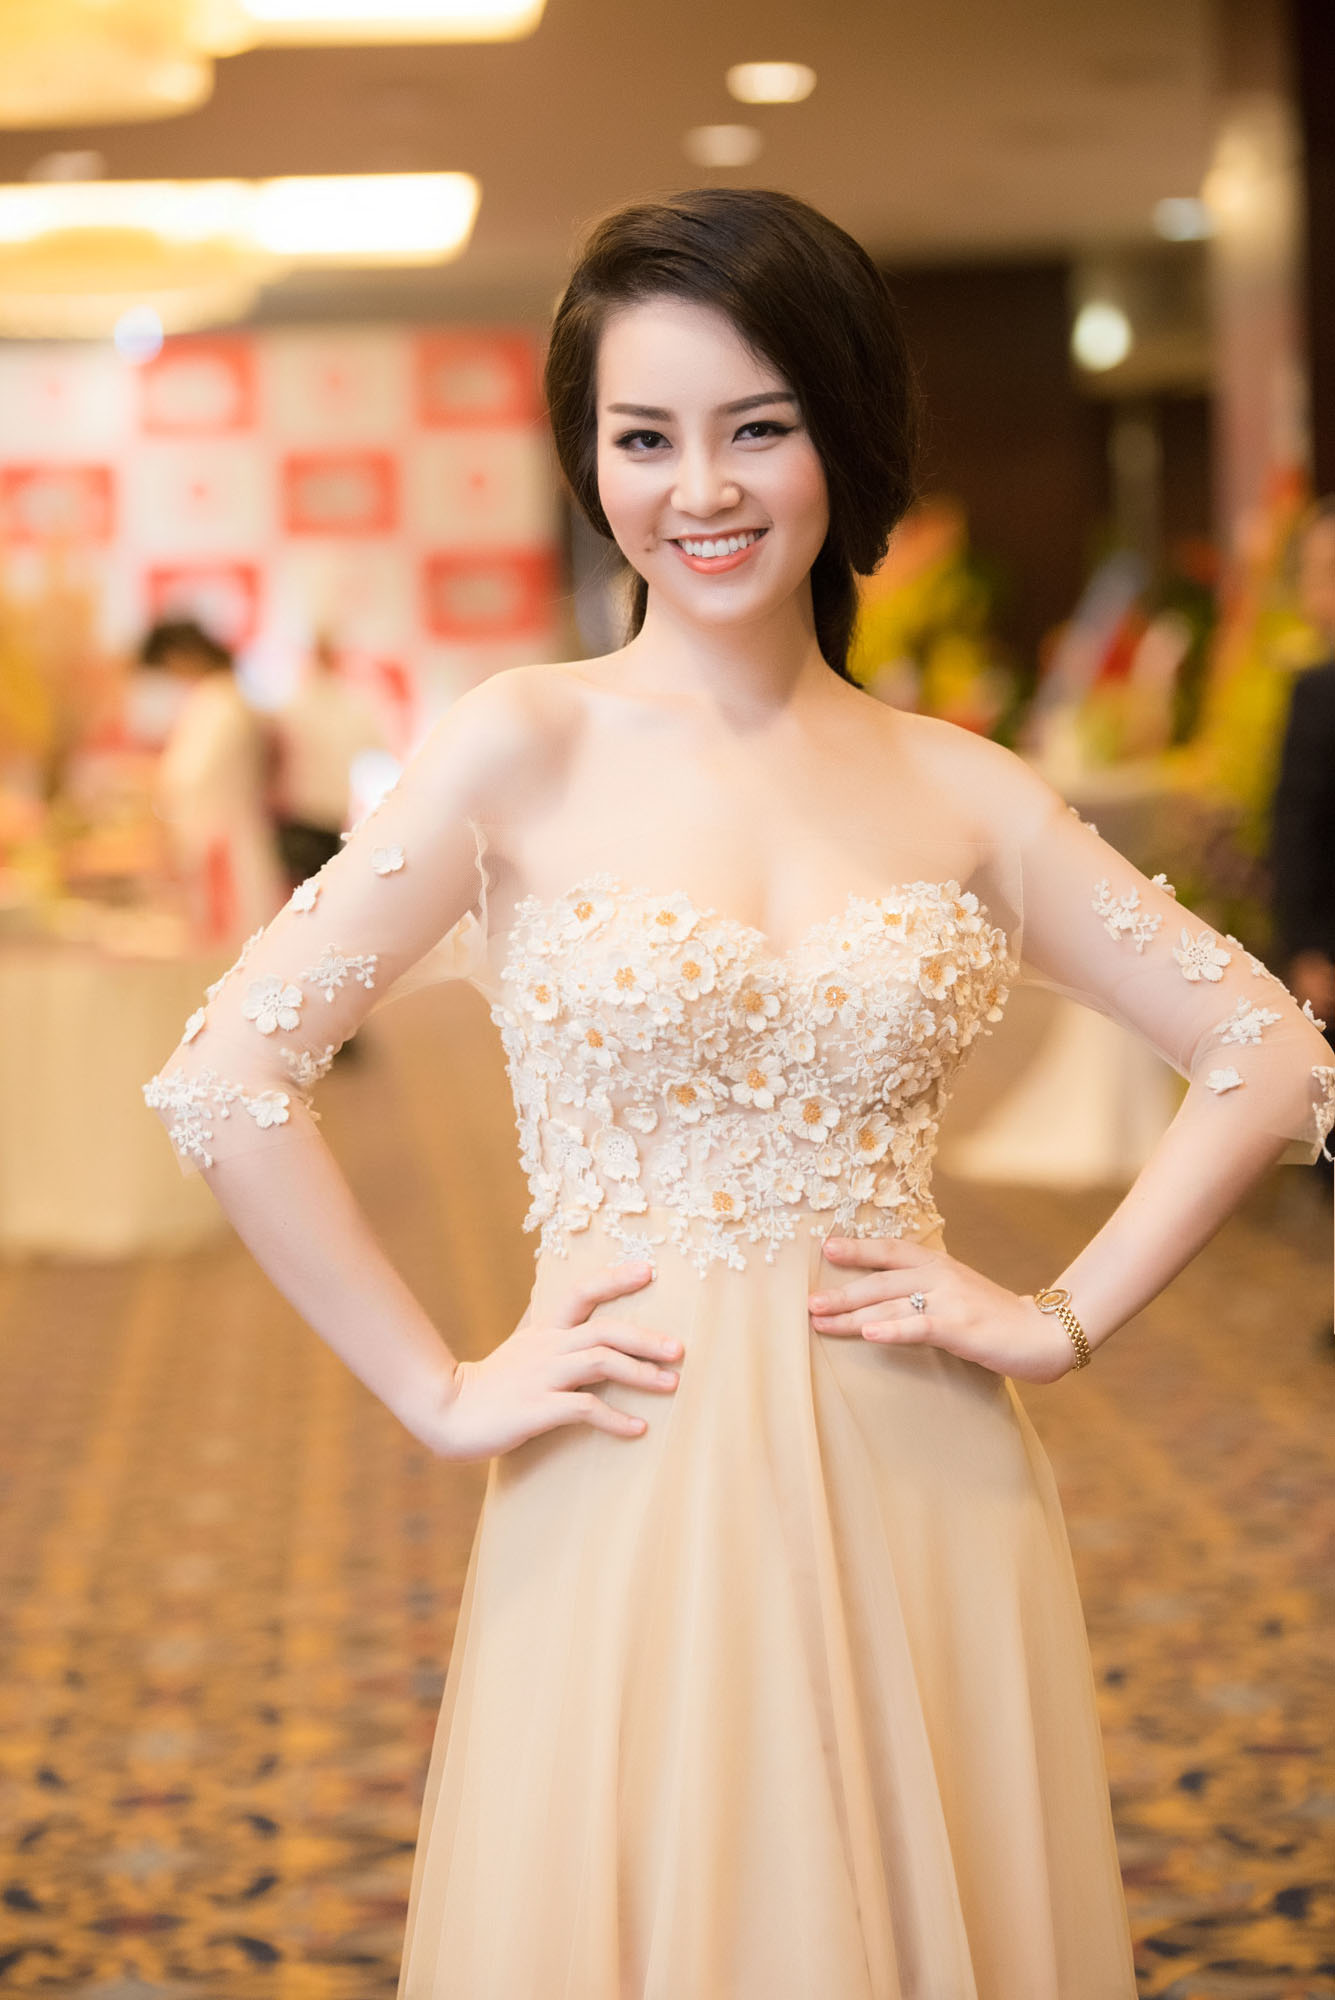 Không đứng trên sân khấu trong vai trò người mẫu như sự lựa chọn của nhiều nhan sắc khác, Thụy Vân chọn nghề MC sau khi bước ra từ cuộc thi Hoa hậu.